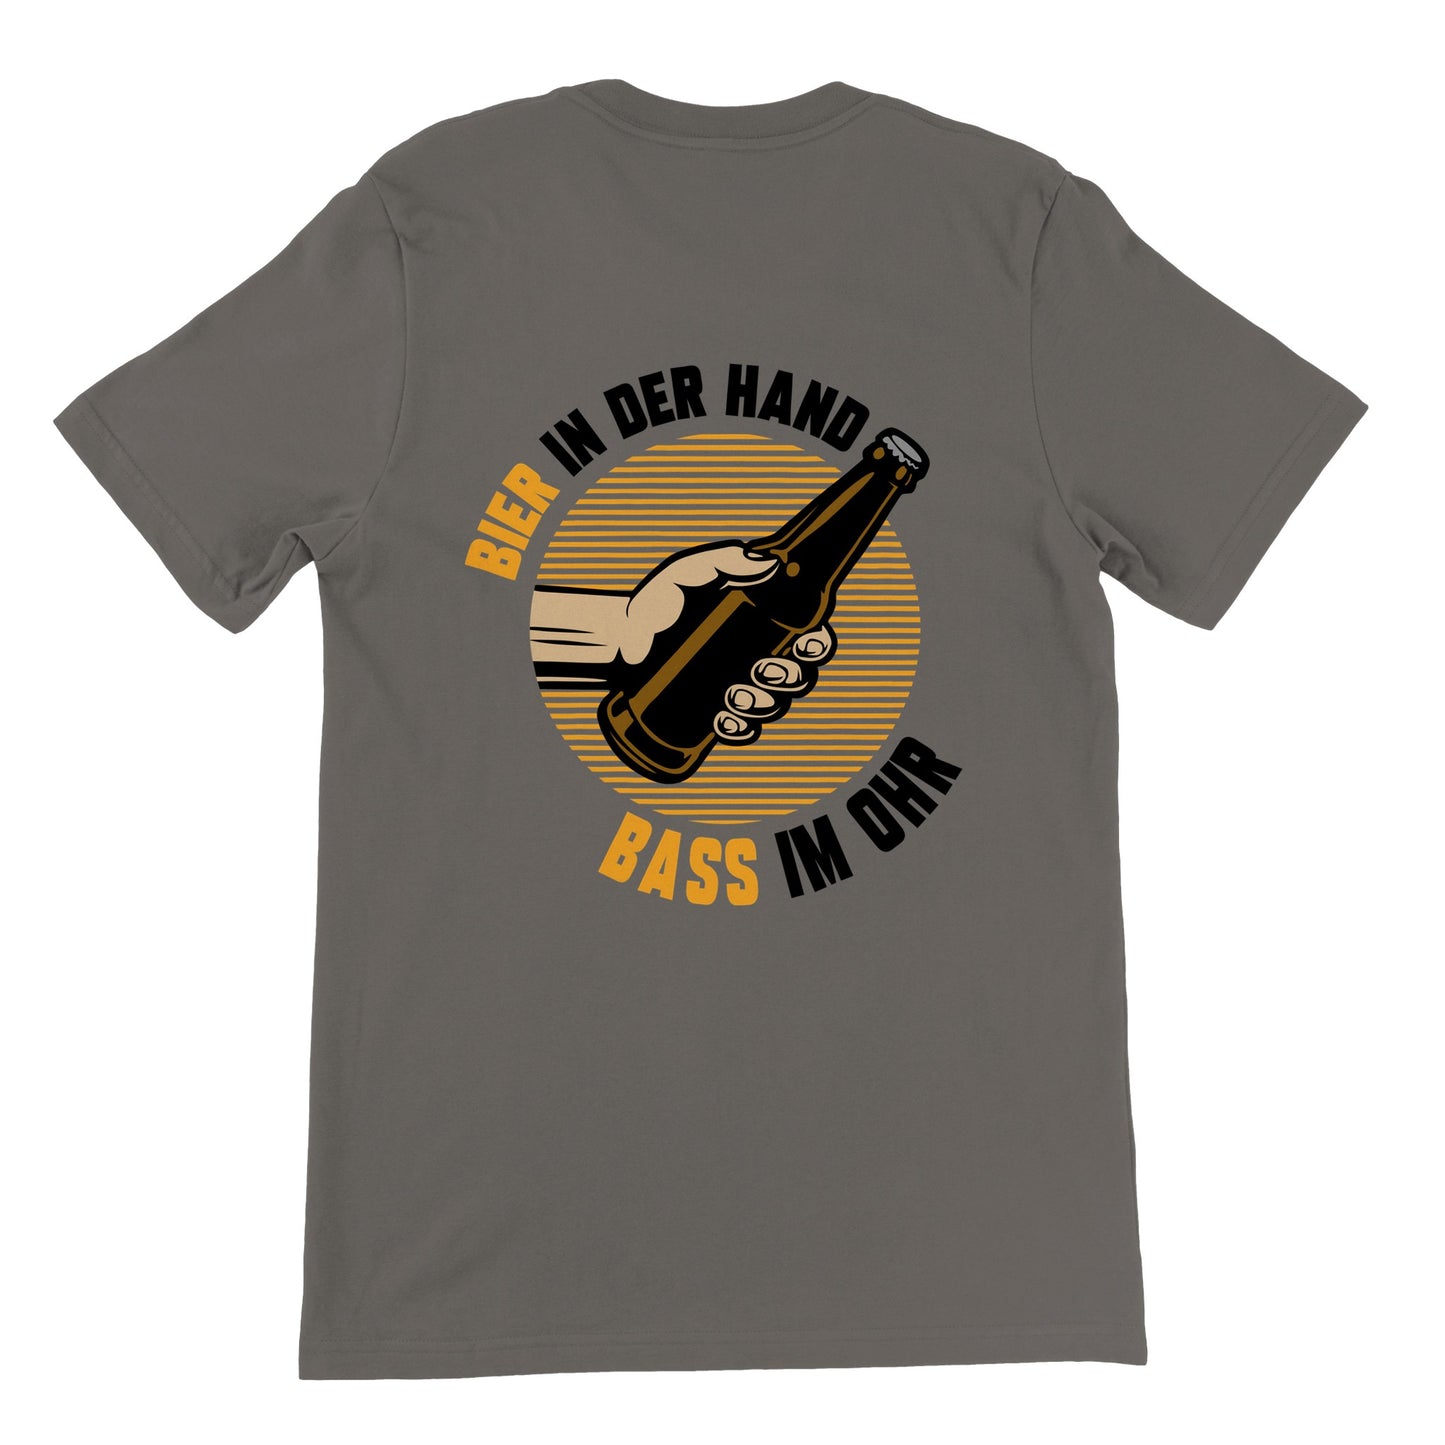 Bier in der Hand  Bass im Ohr - Premium Männer / Unisex T-Shirt mit Rundhalsausschnitt